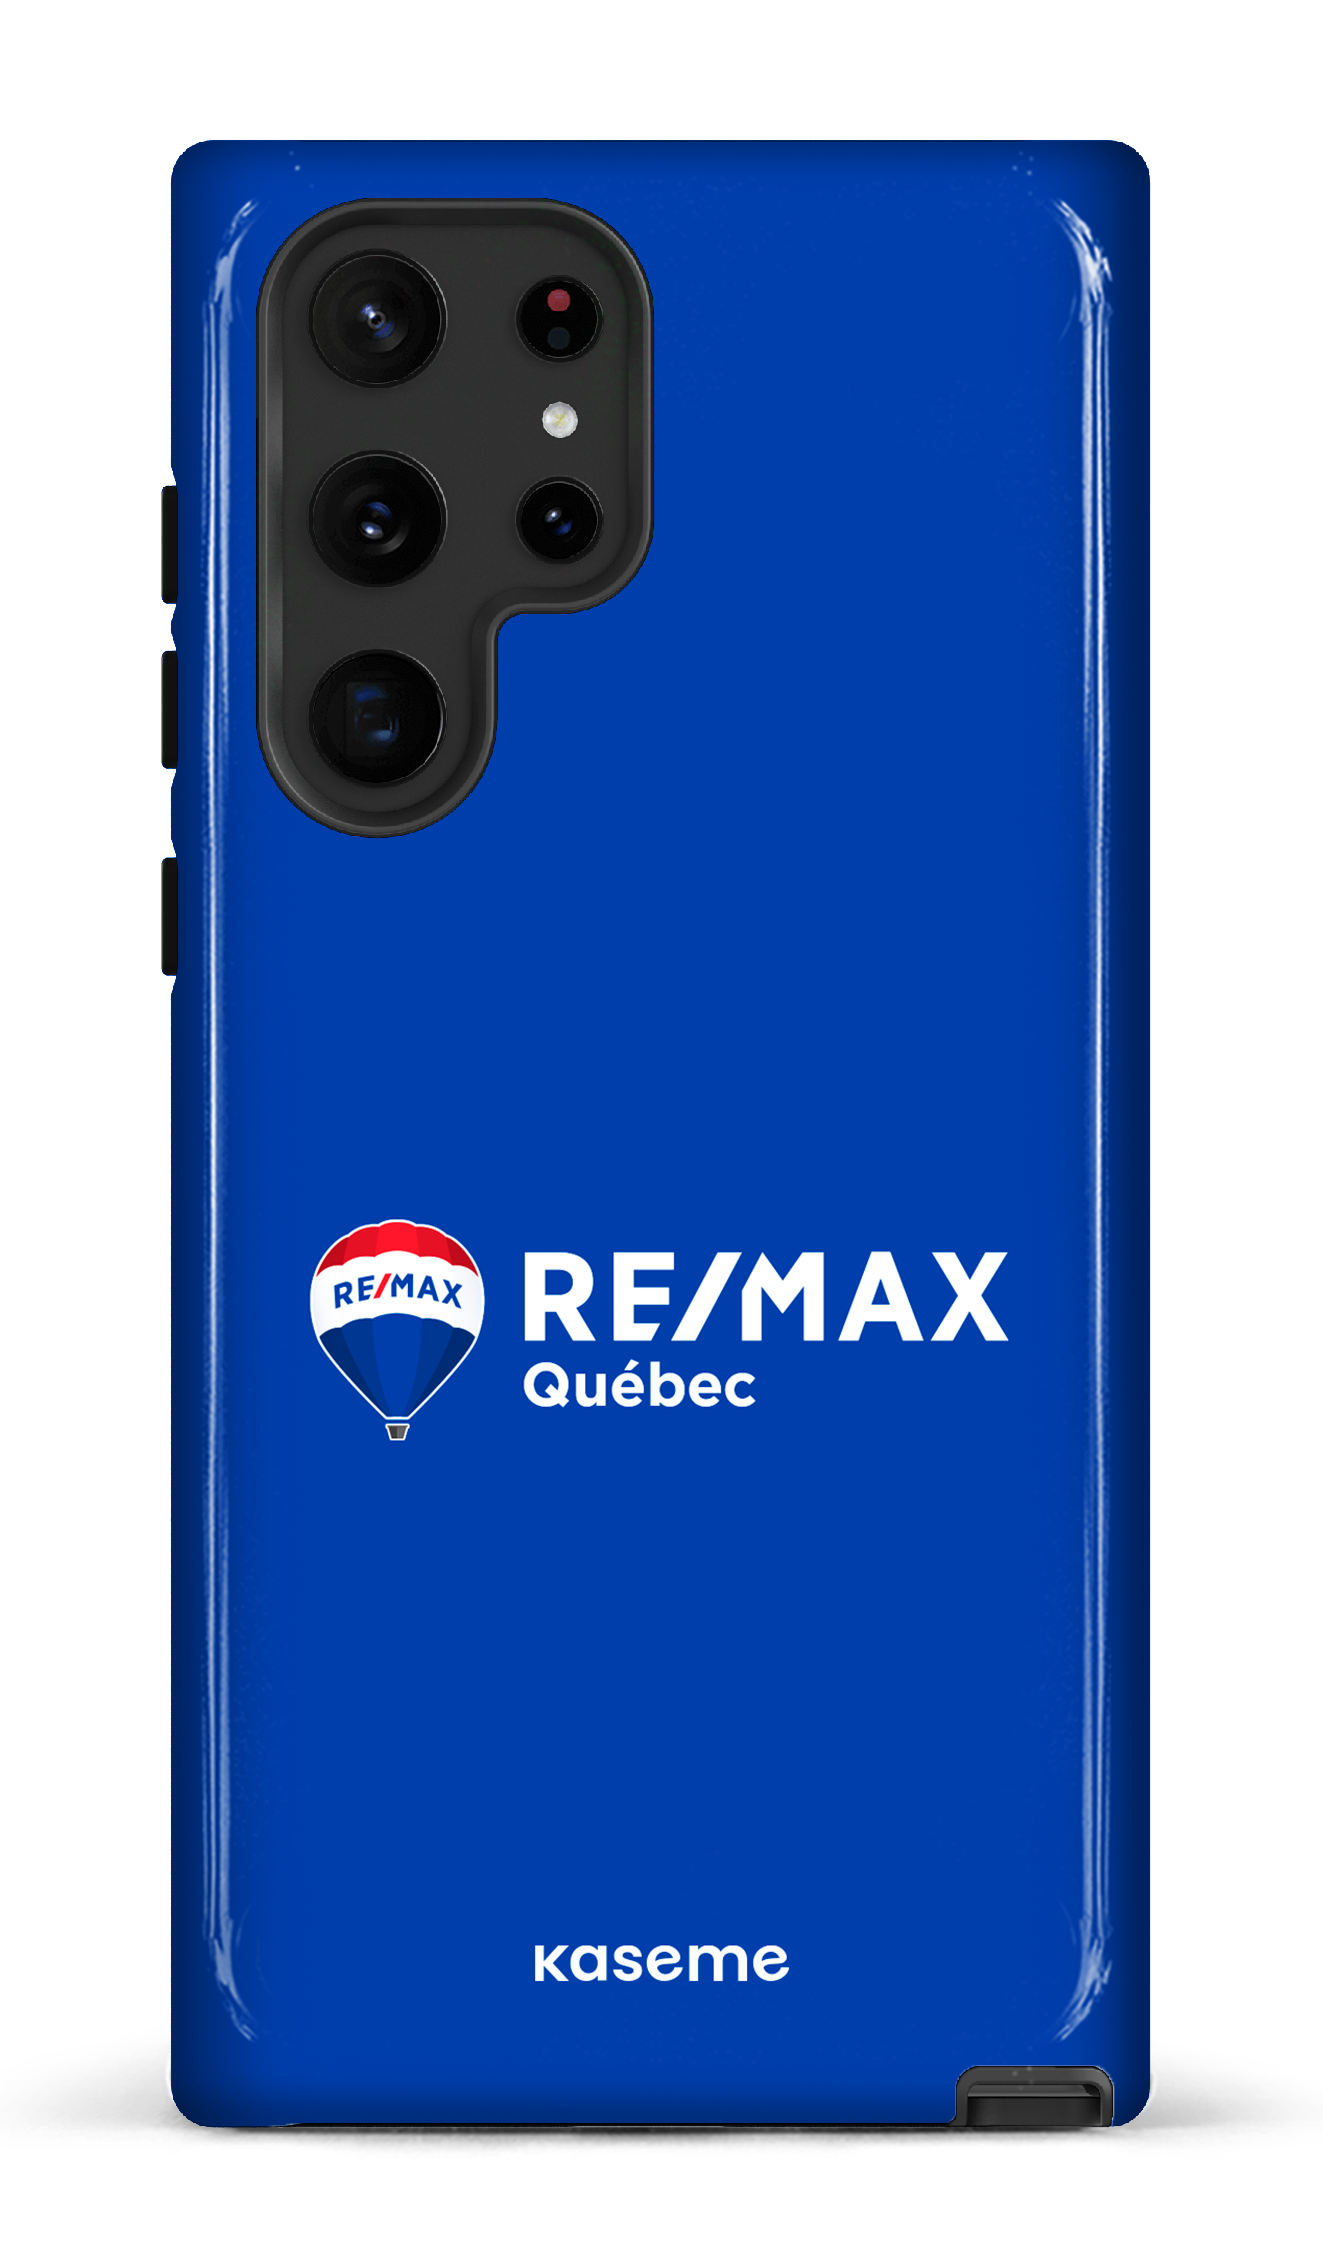 Remax Québec Bleu - Galaxy S22 Ultra